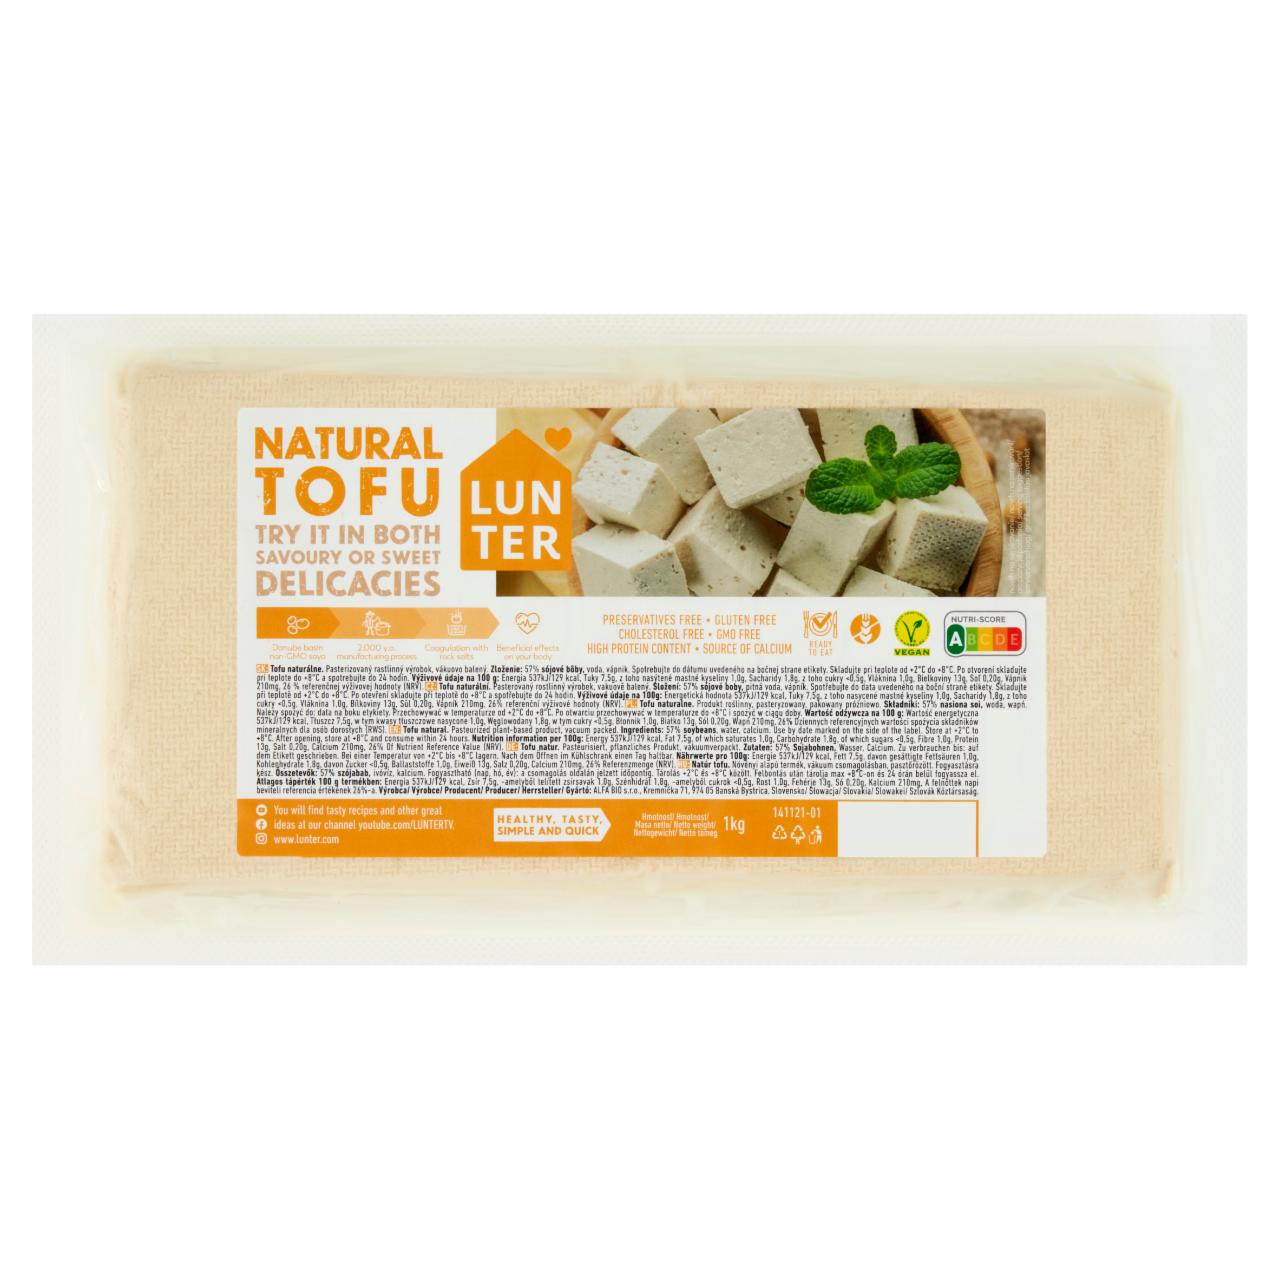 Képek - Lunter natúr tofu 1 kg